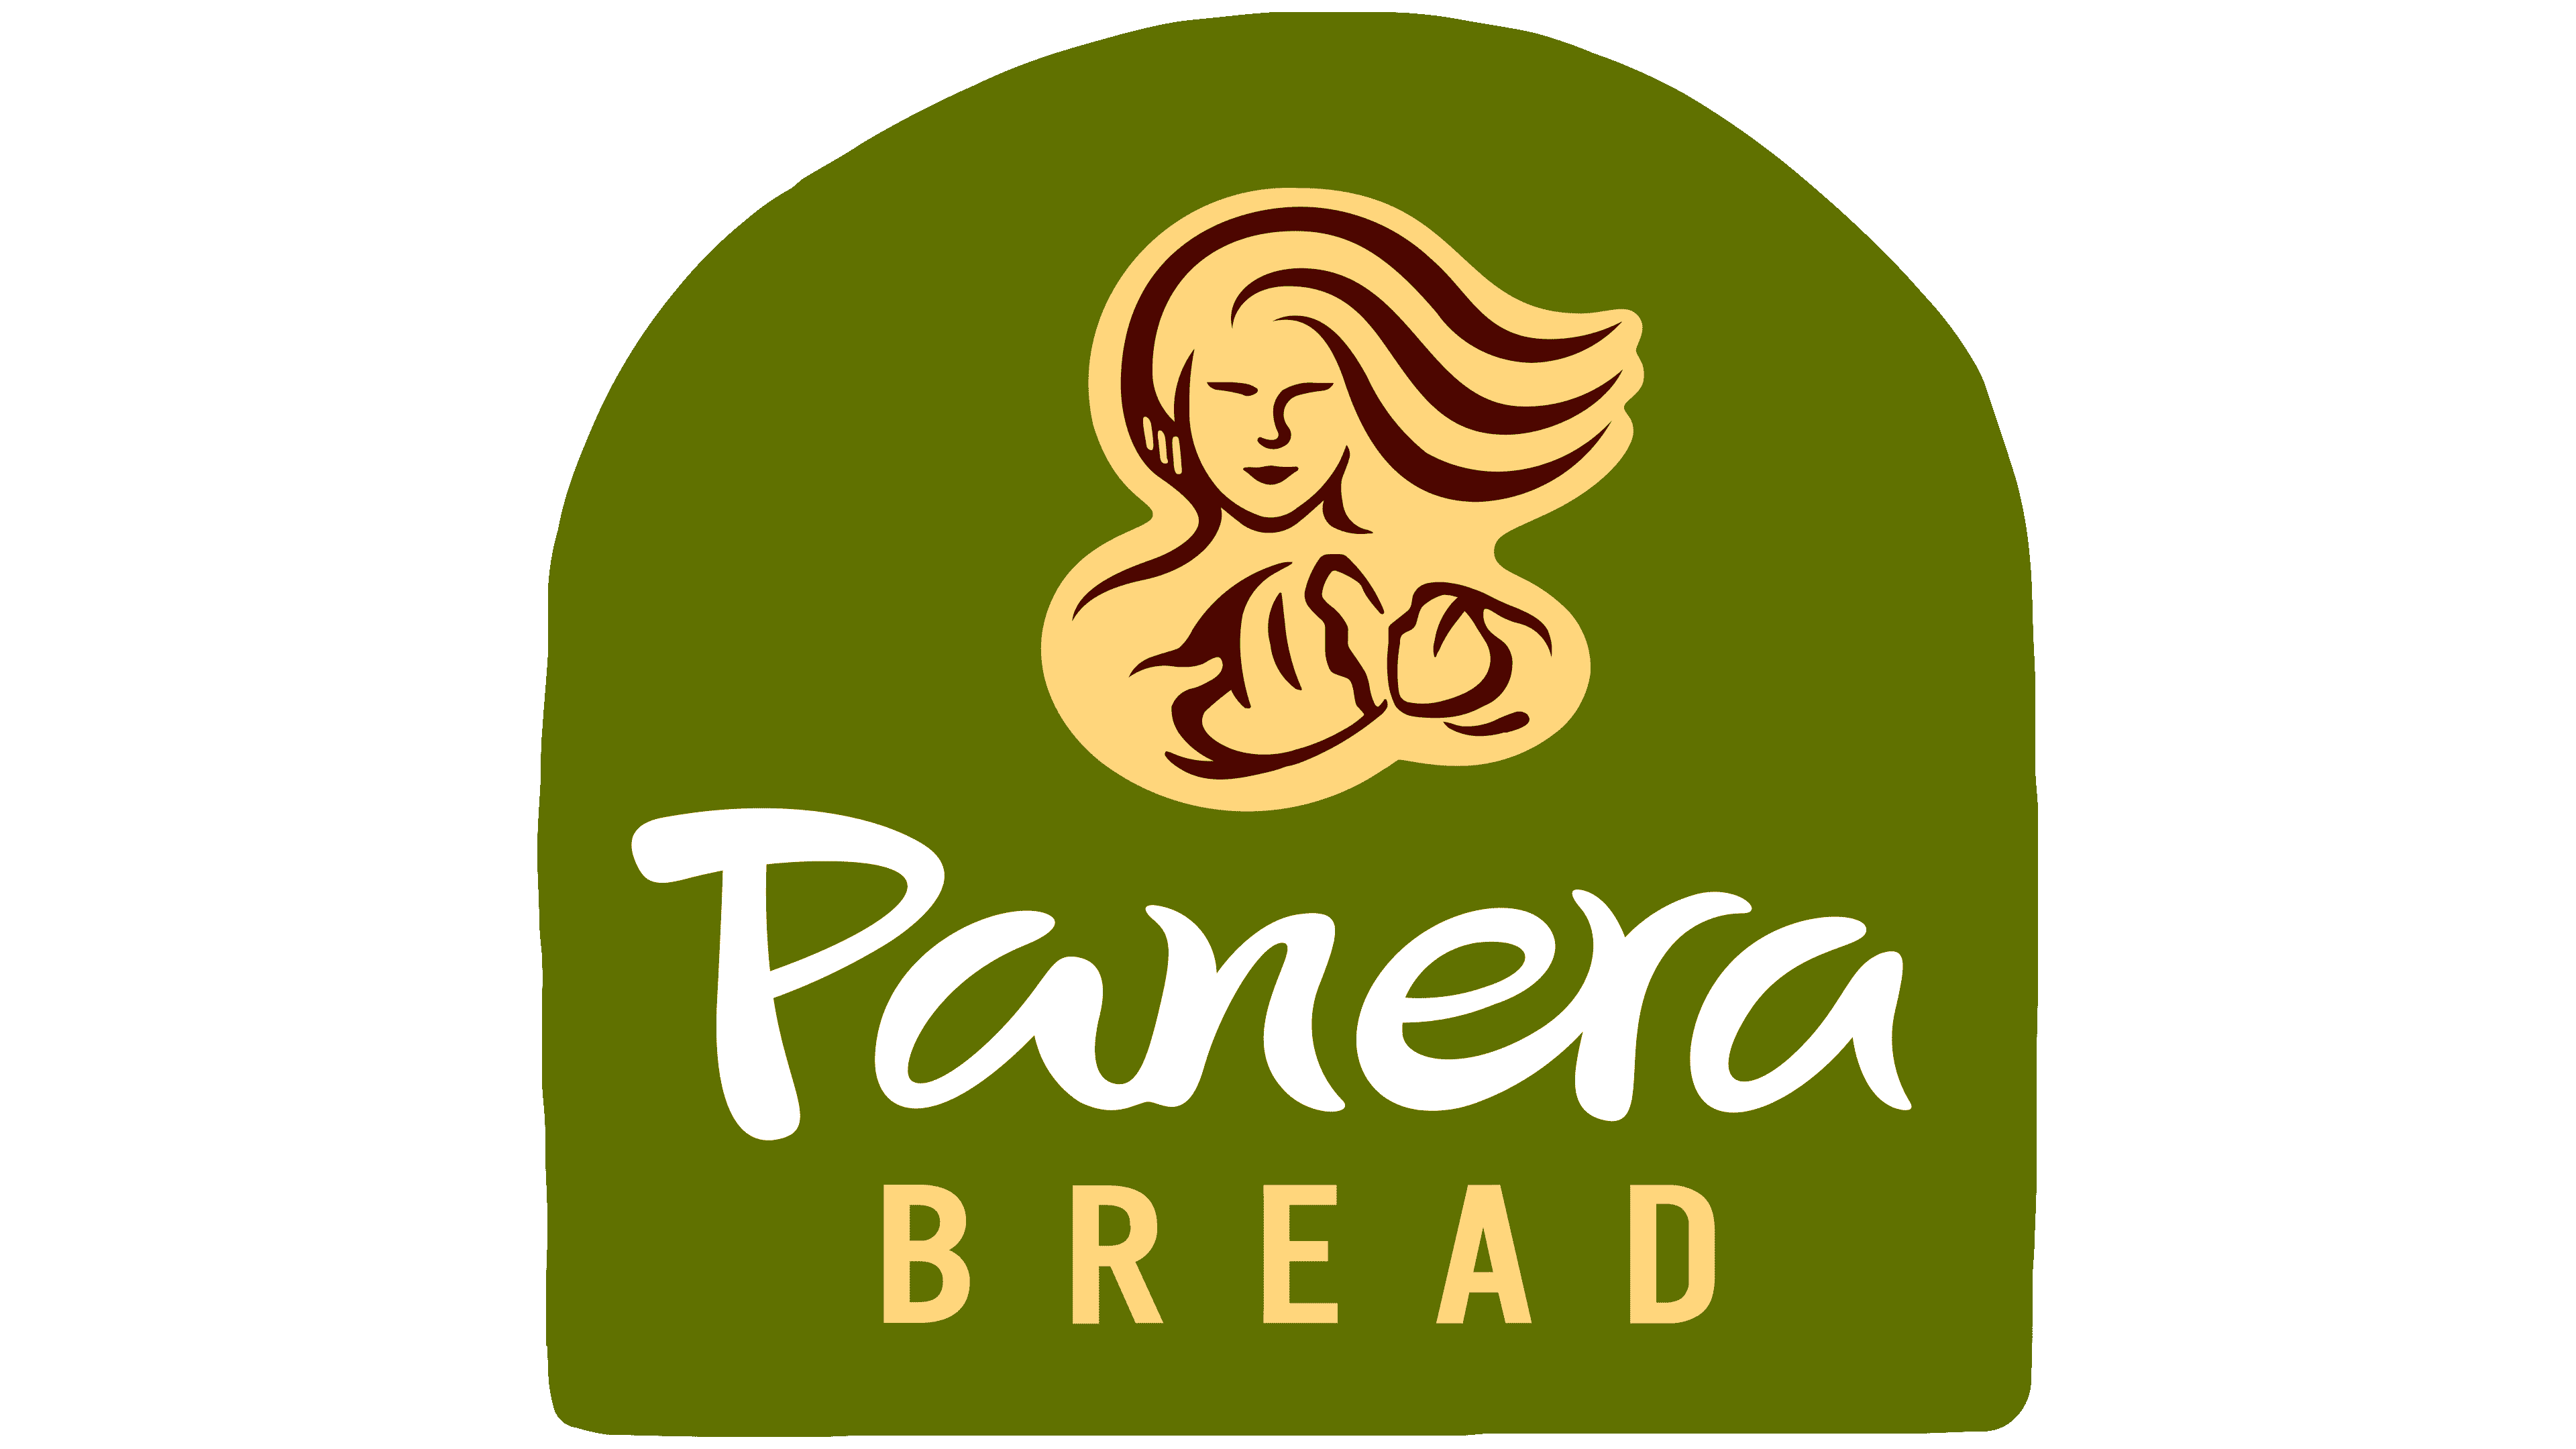 Panera Bread in Ames, Iowa.